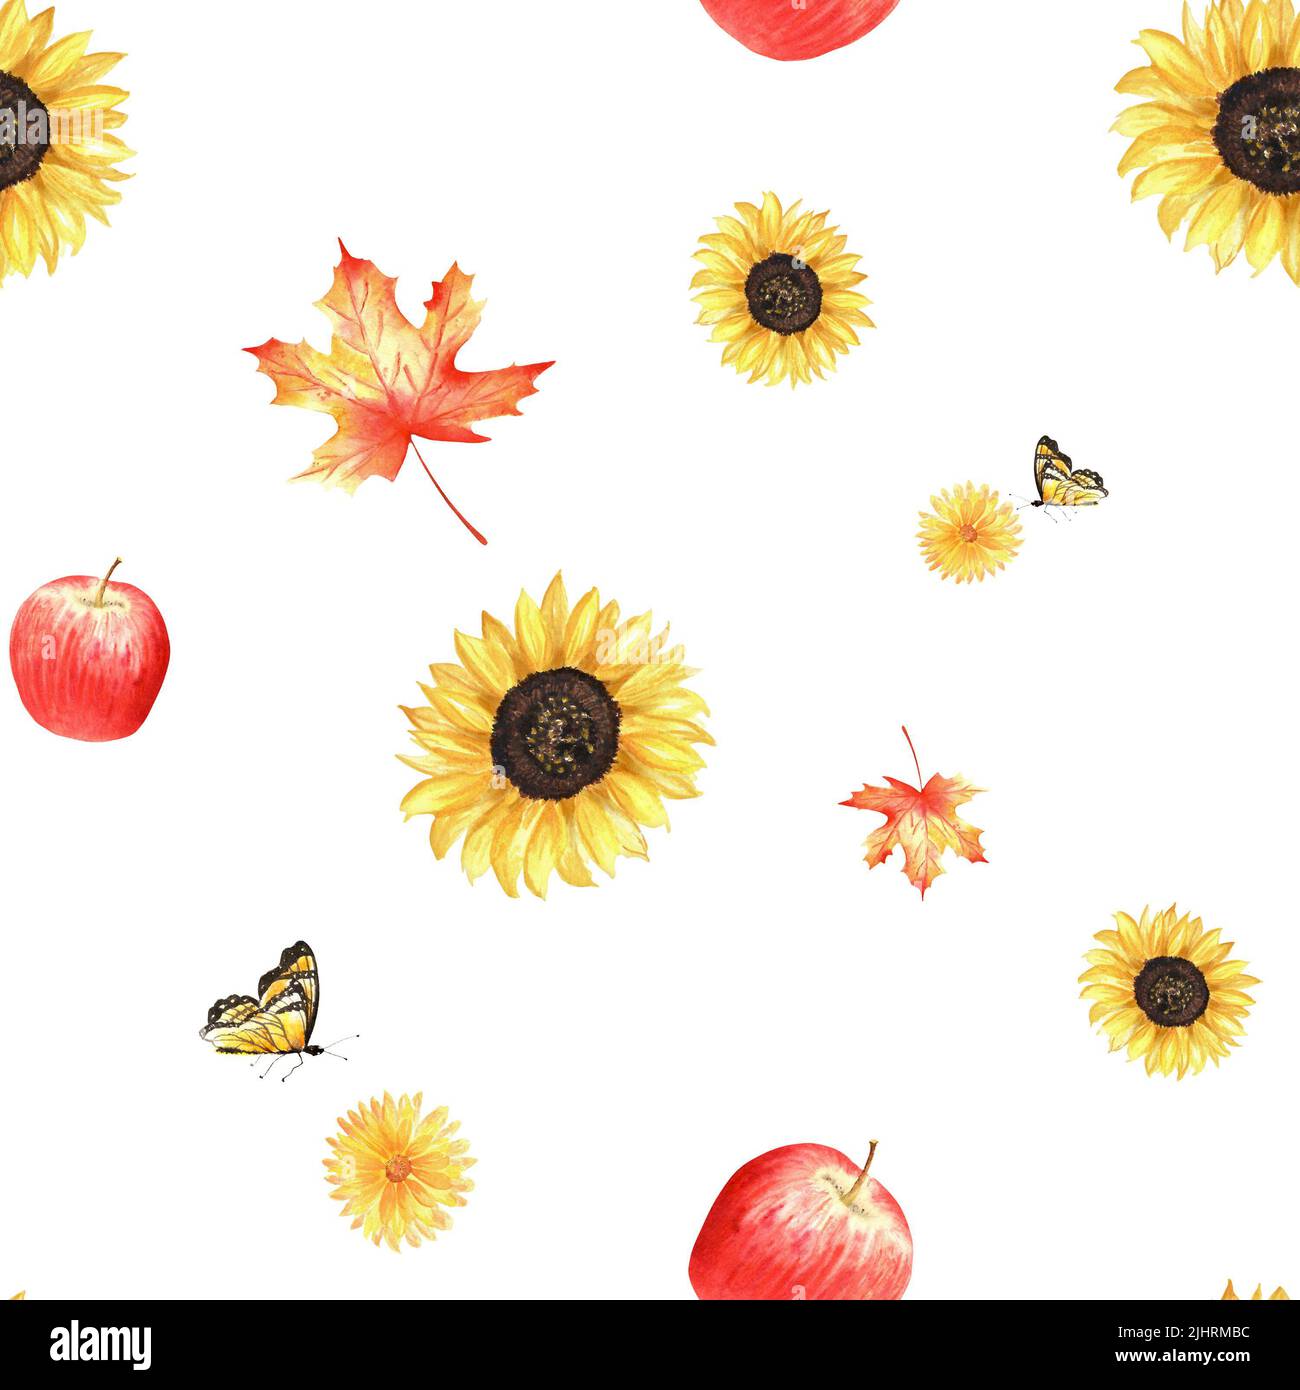 Aquarell-Herbstmuster. Eine Gartenkollektion im Herbst. Eine Reihe von Aquarell-Illustrationen, darunter Sonnenblumen, Ahornblätter, Äpfel, Ringelblume und b Stockfoto